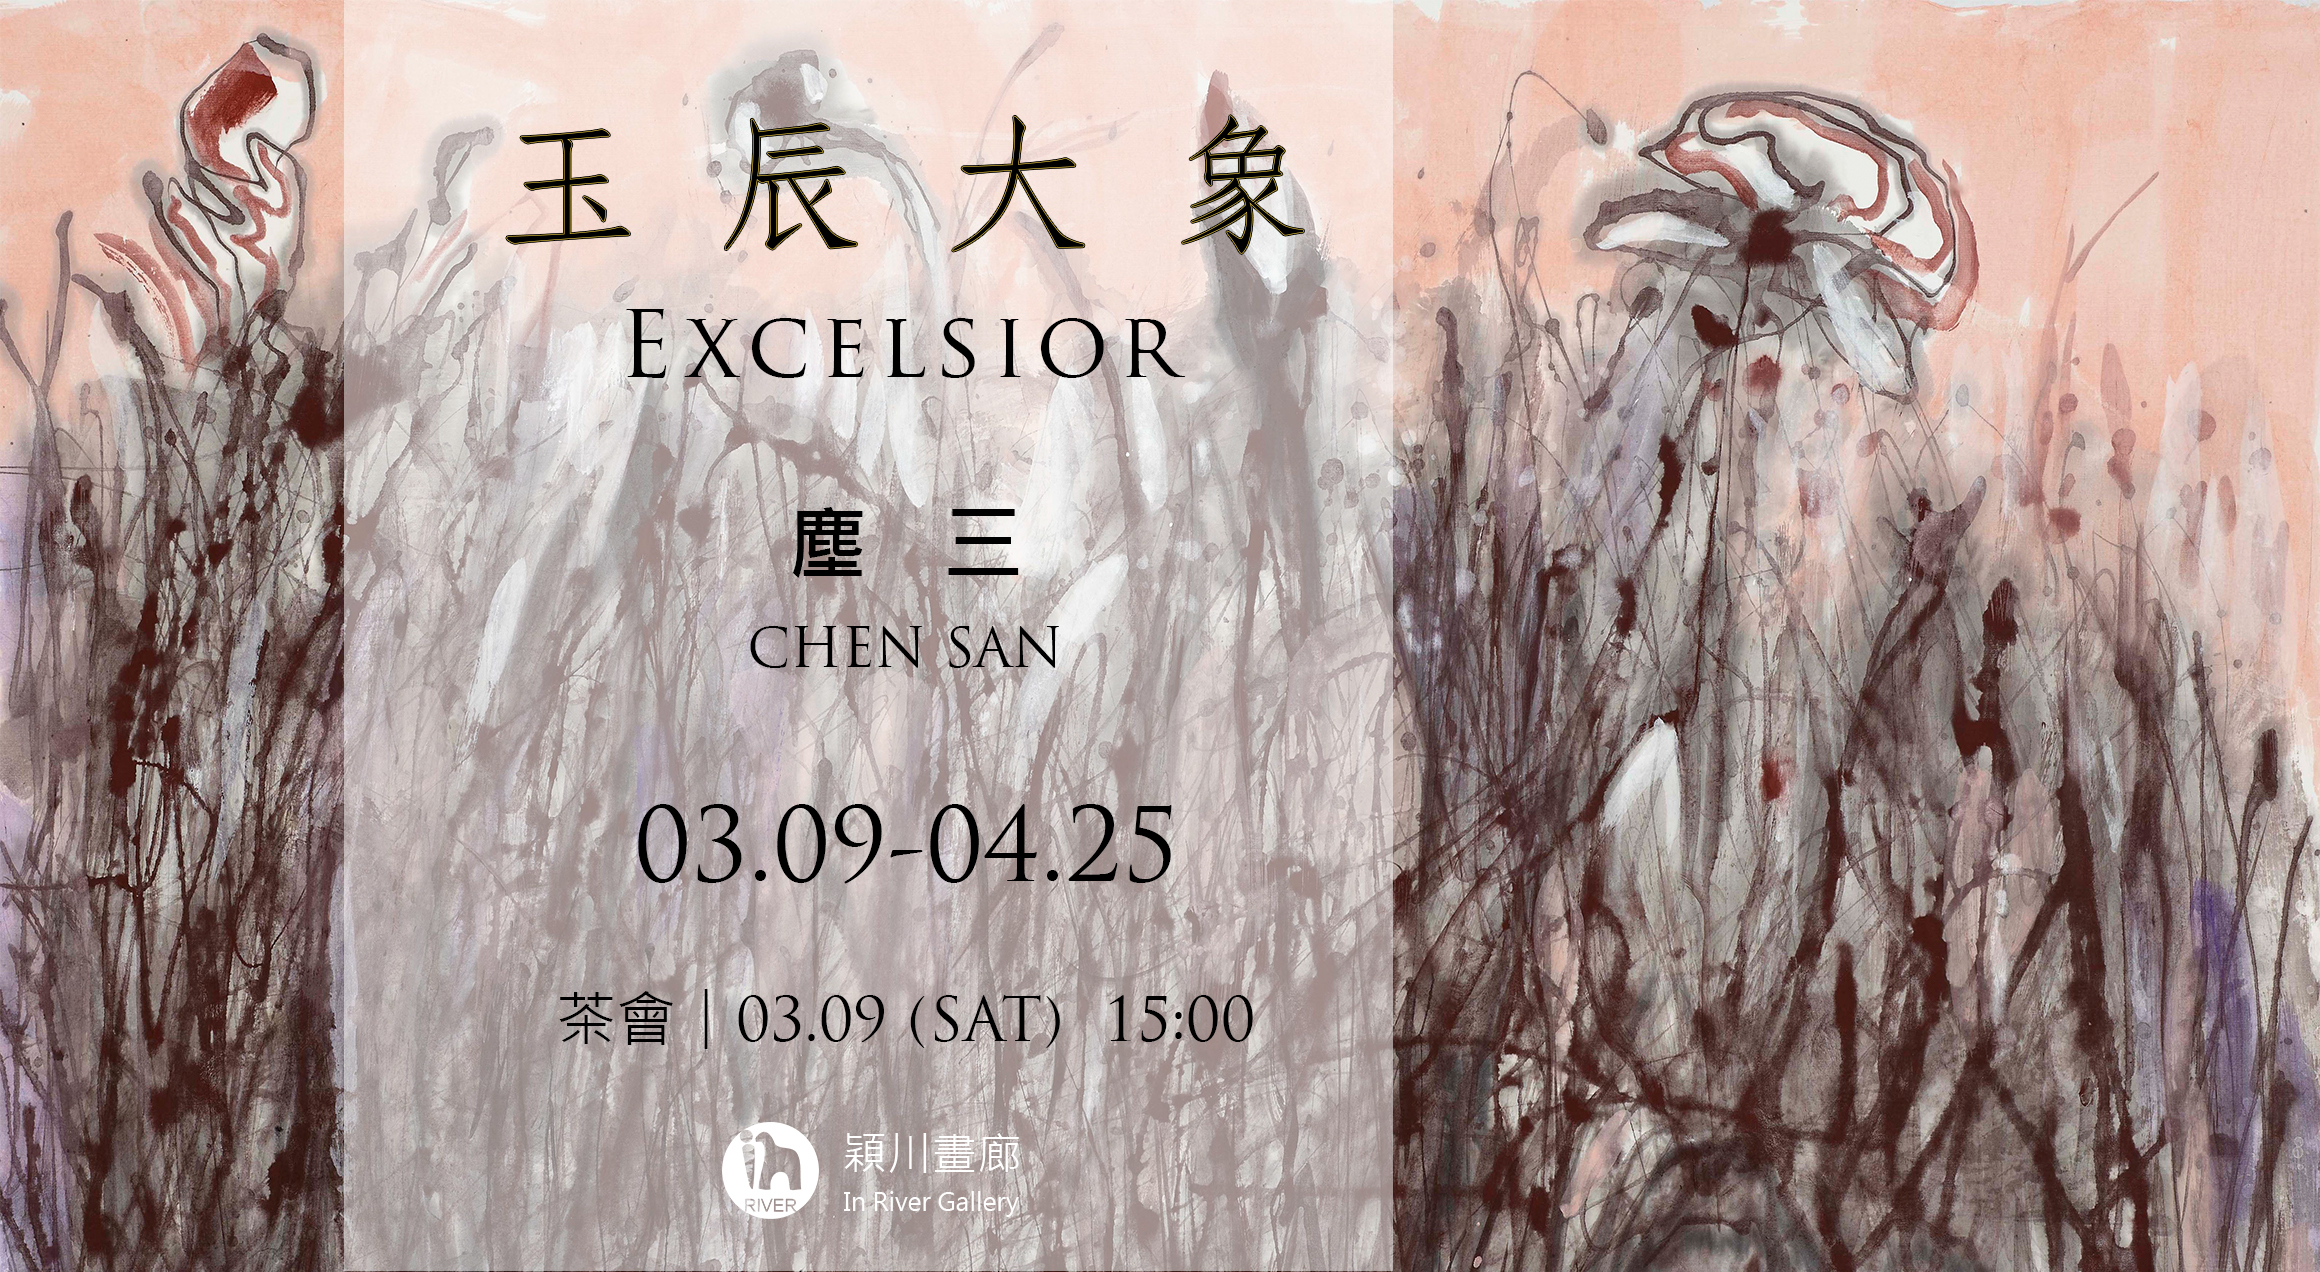 玉辰大象 - 塵三個展  Excelsior - Chen San solo Exhibition